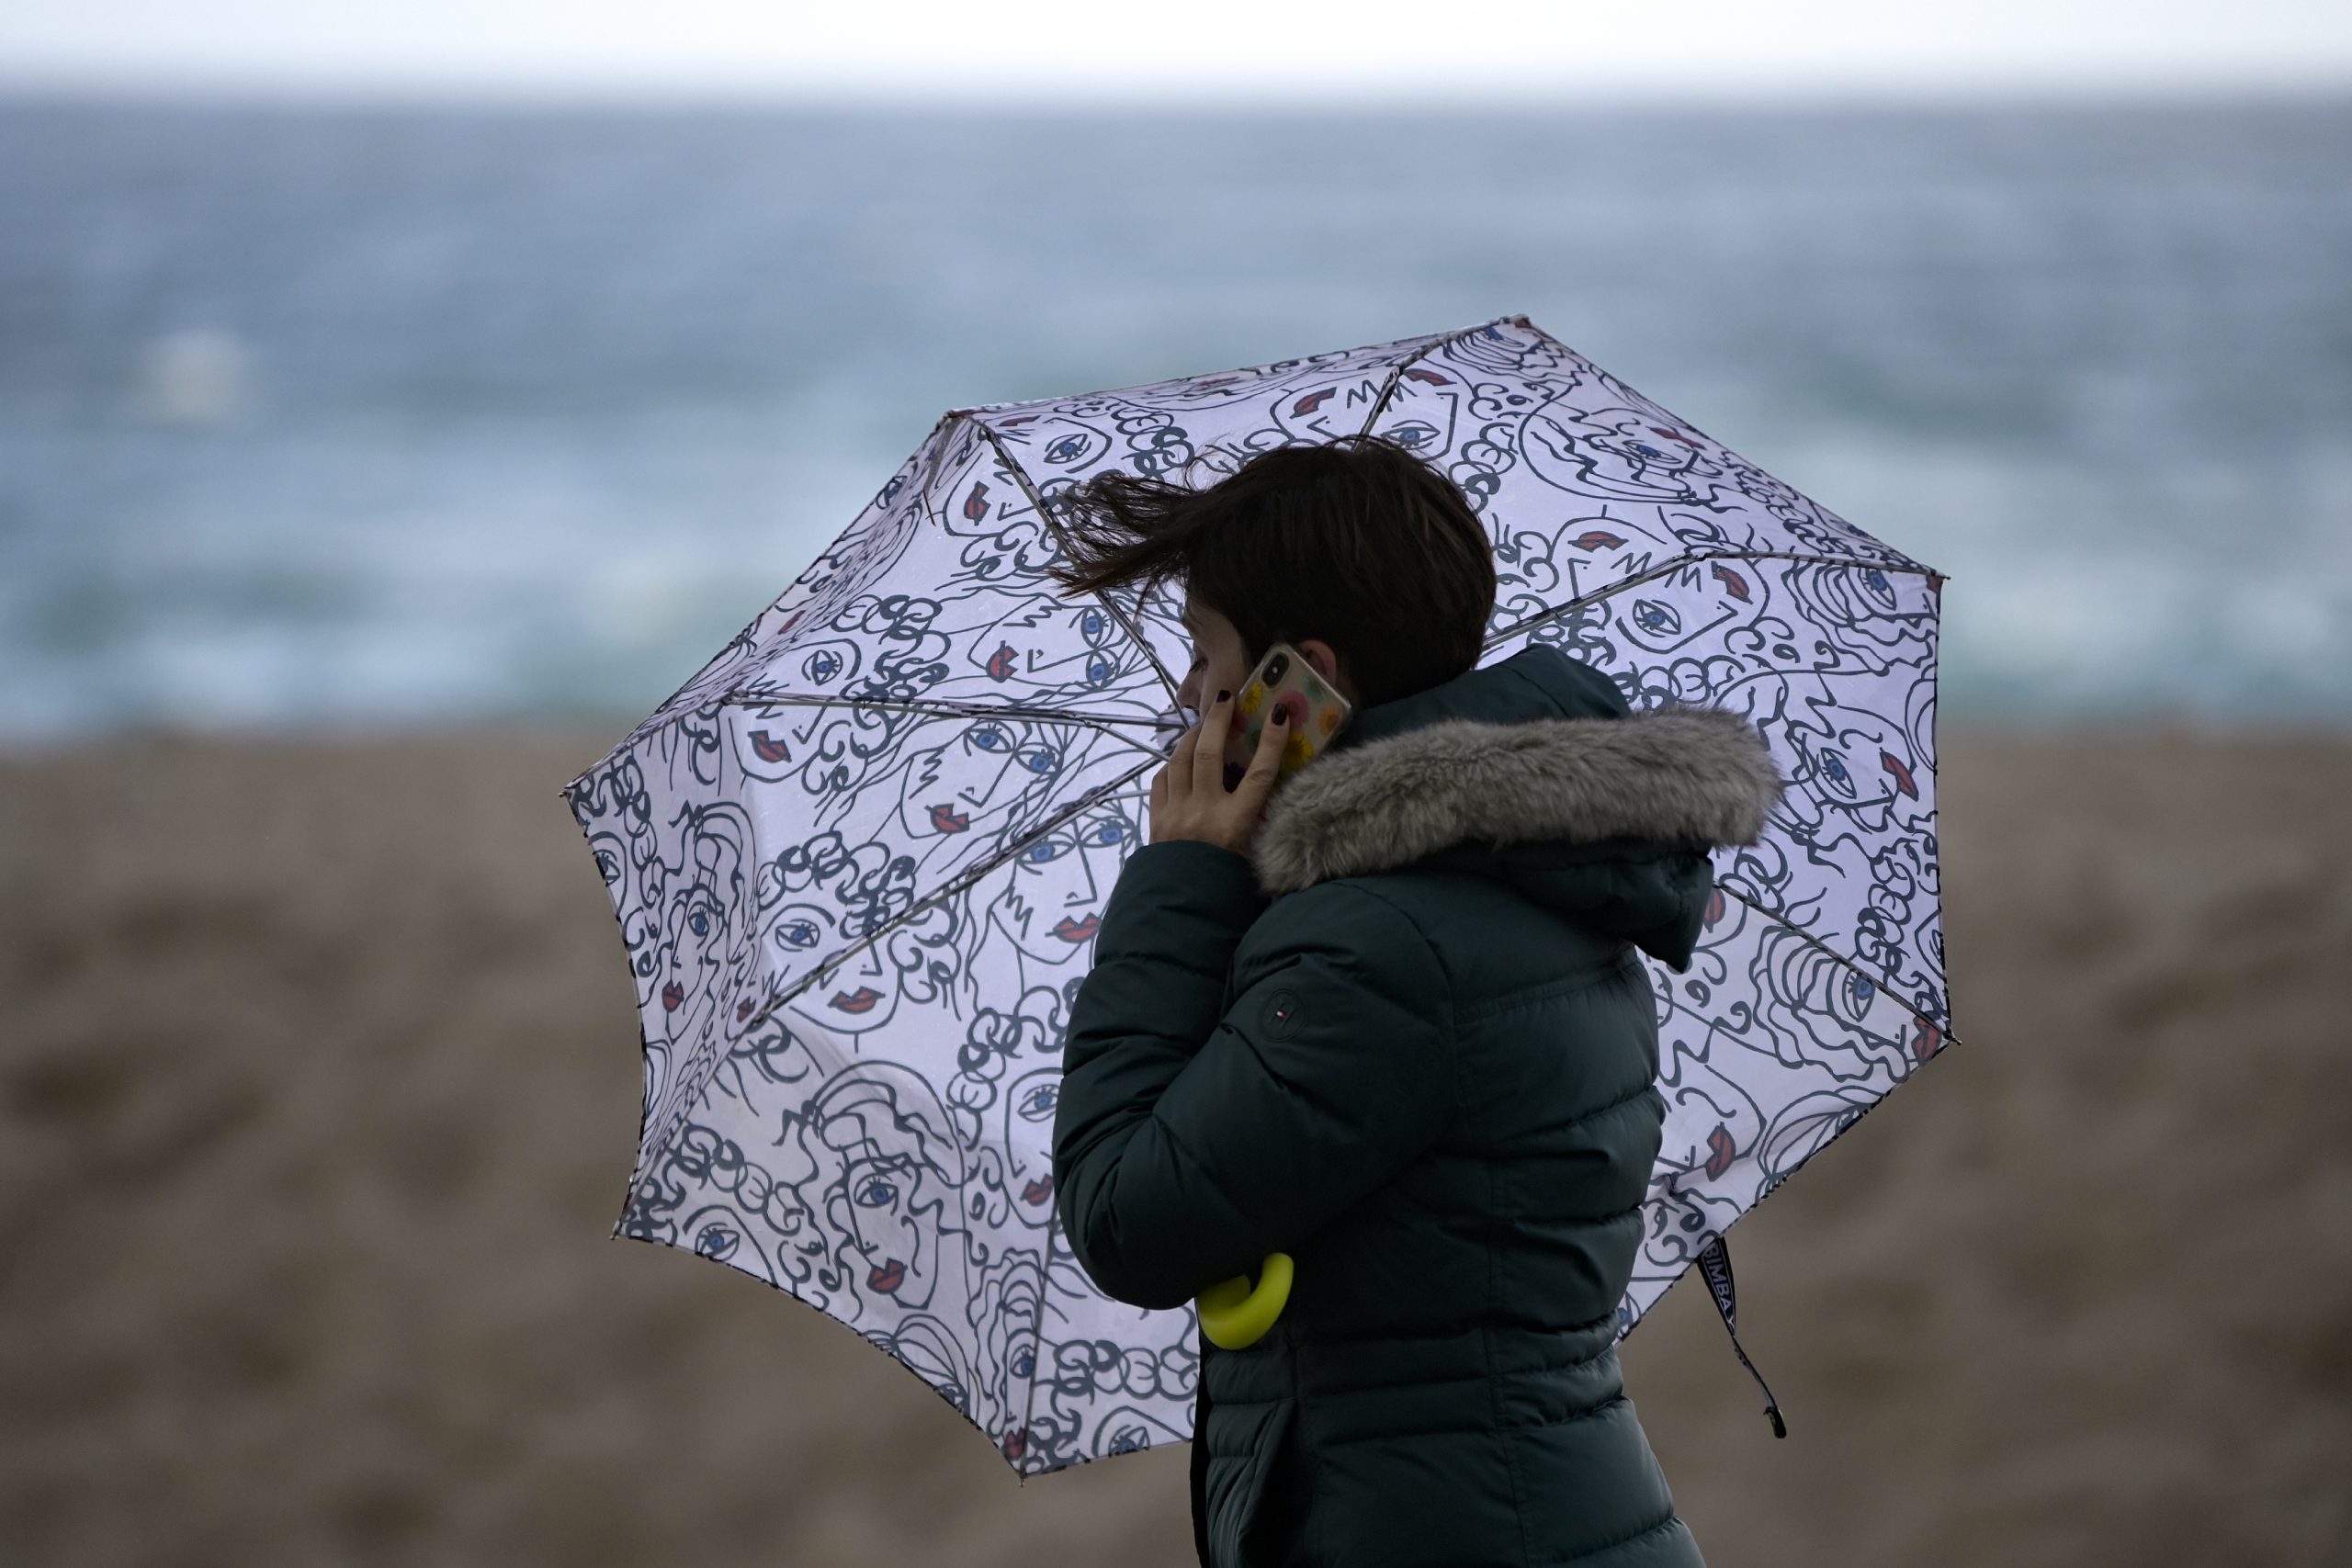 Galicia, Tarragona y Mallorca se preparan para una jornada de fuertes vientos